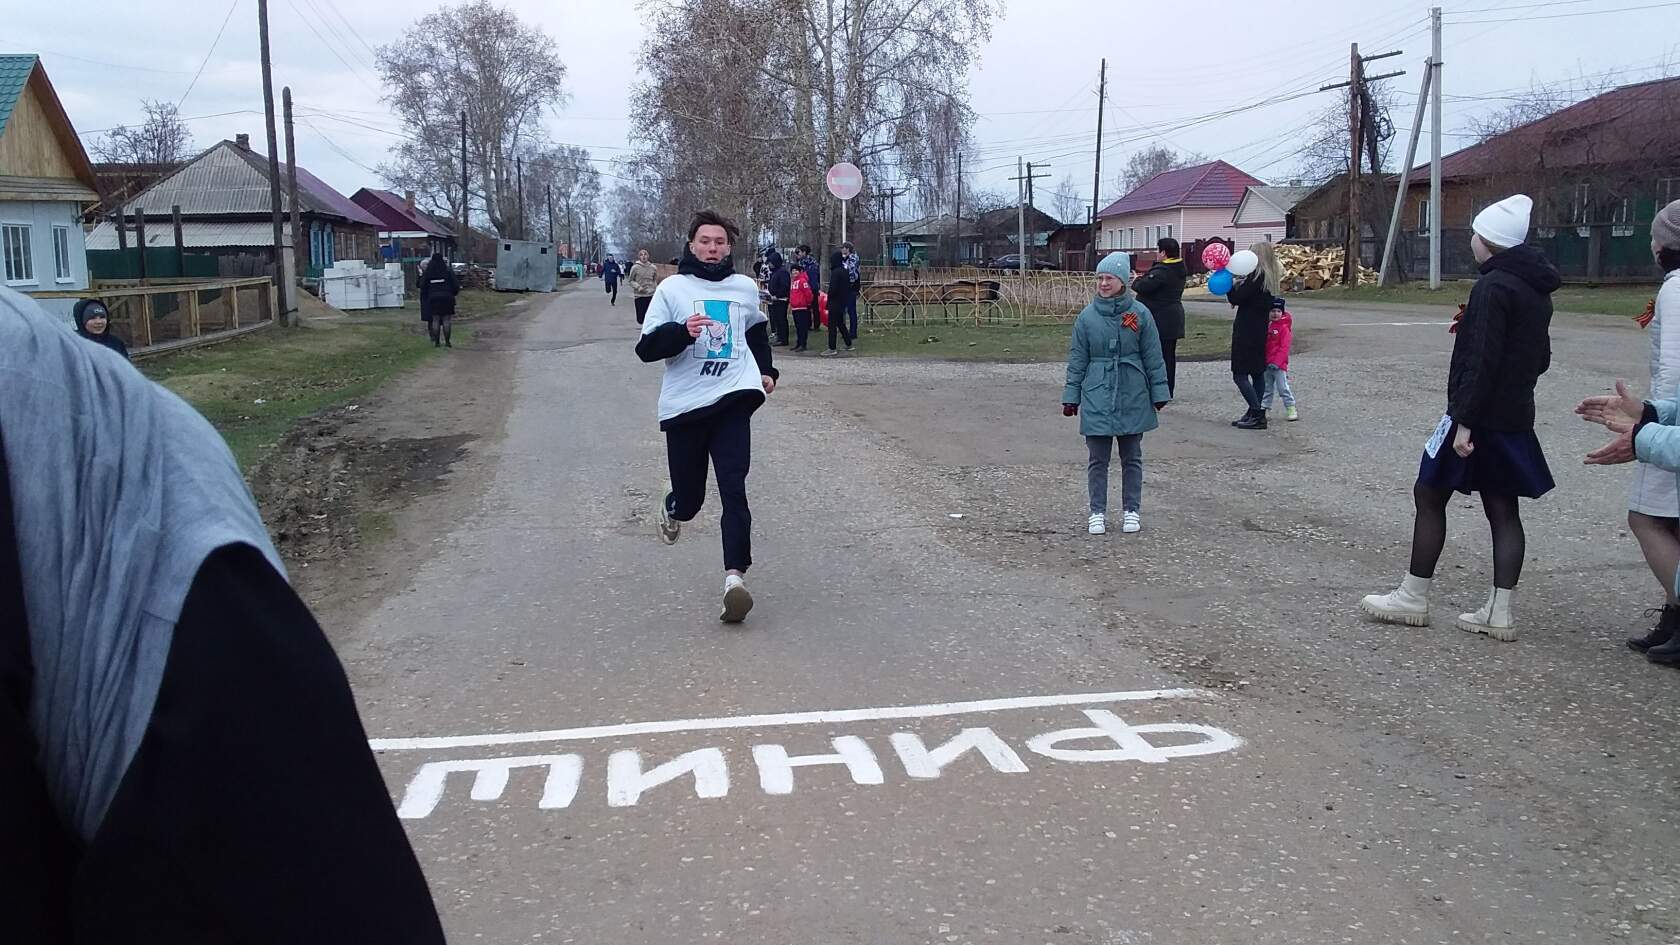 Турнир по легкоатлетической эстафете прошел в п.Балаганск 9 мая 2022года.  